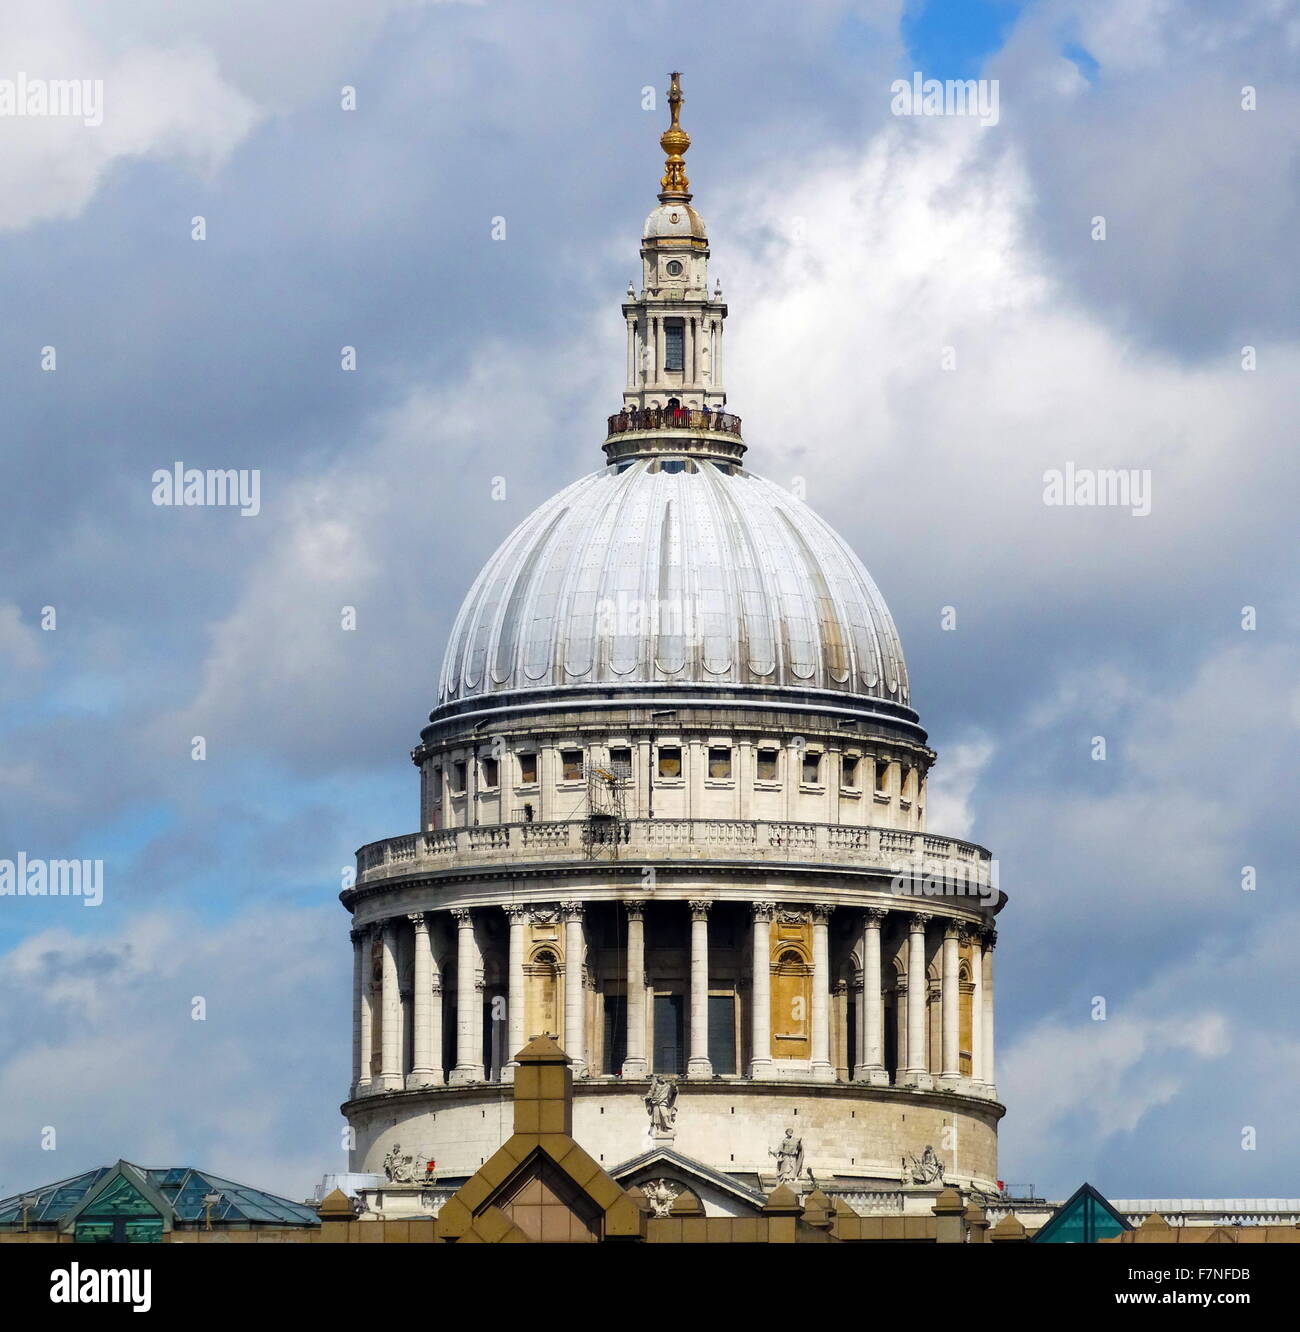 Fotografia della cupola di Saint Paul Cathedral, una cattedrale anglicana, la sede del vescovo di Londra e la chiesa madre della diocesi di Londra. Datata 2015 Foto Stock